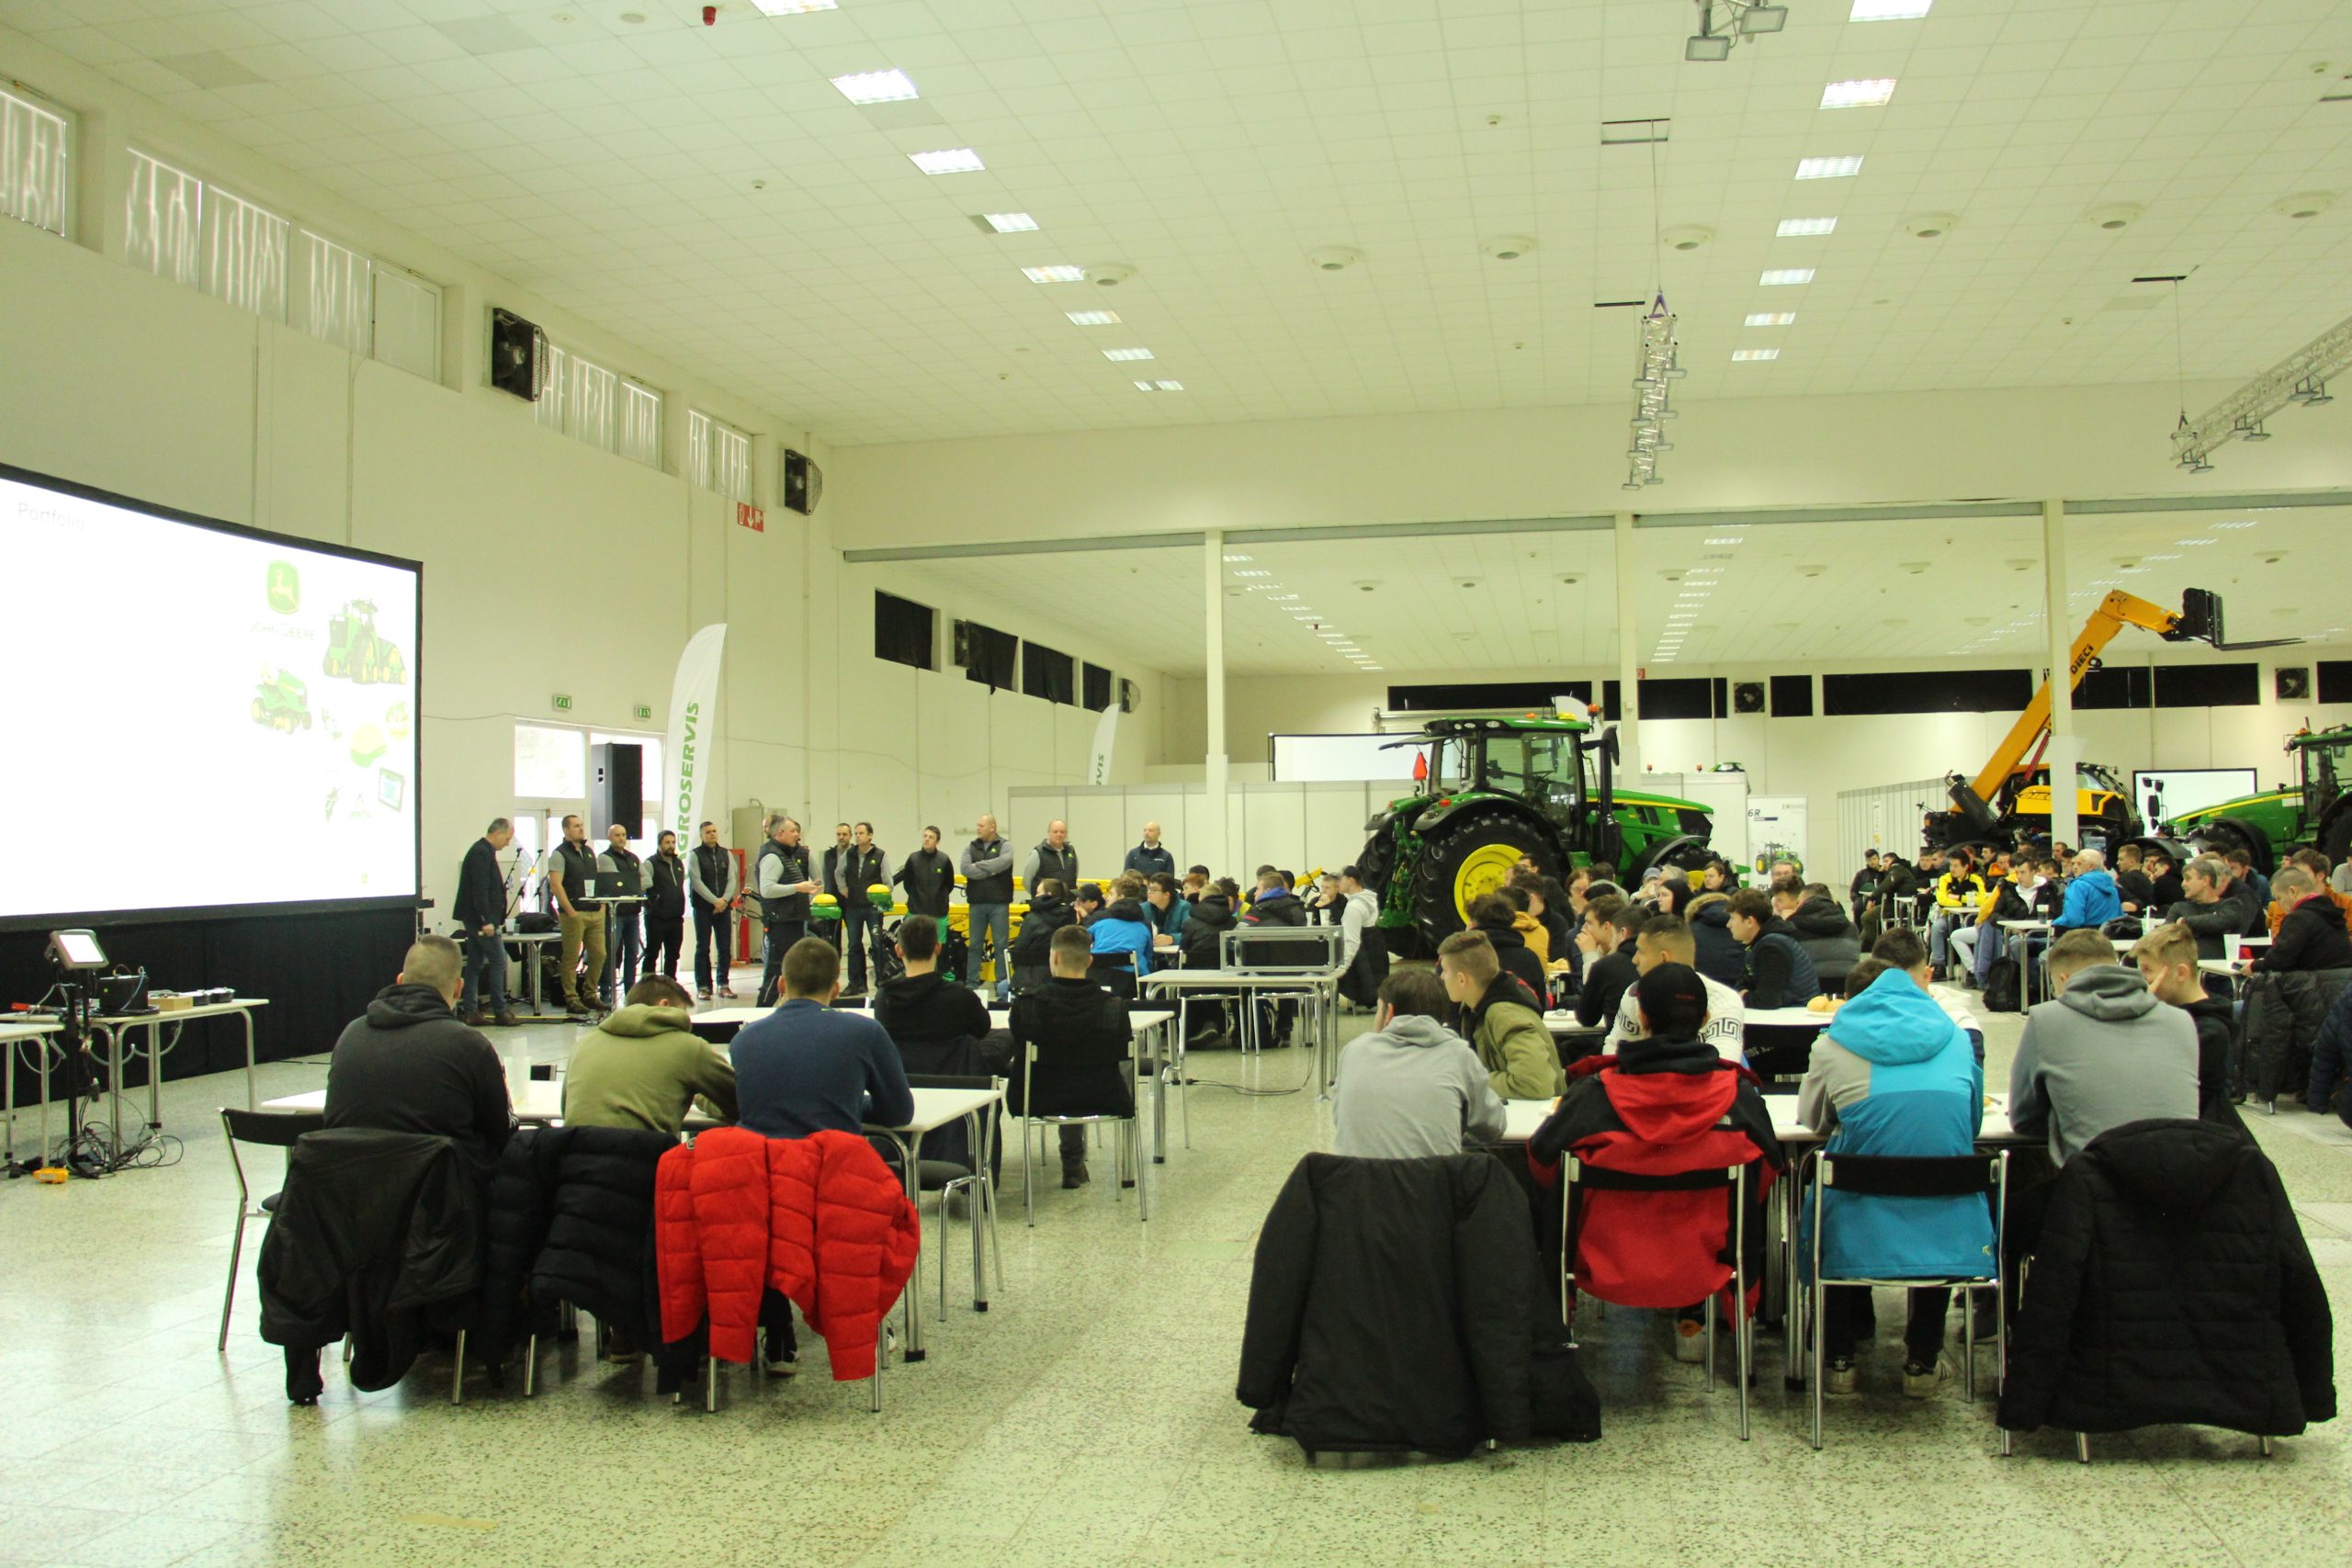 Spoločnosť Agroservis usporiadala v druhý februárový týždeň na nitrianskom výstavisku Agrokomplex už druhé veľké školenie obslúh. Tento rok sa školenia zúčastnilo 1 700 hostí.